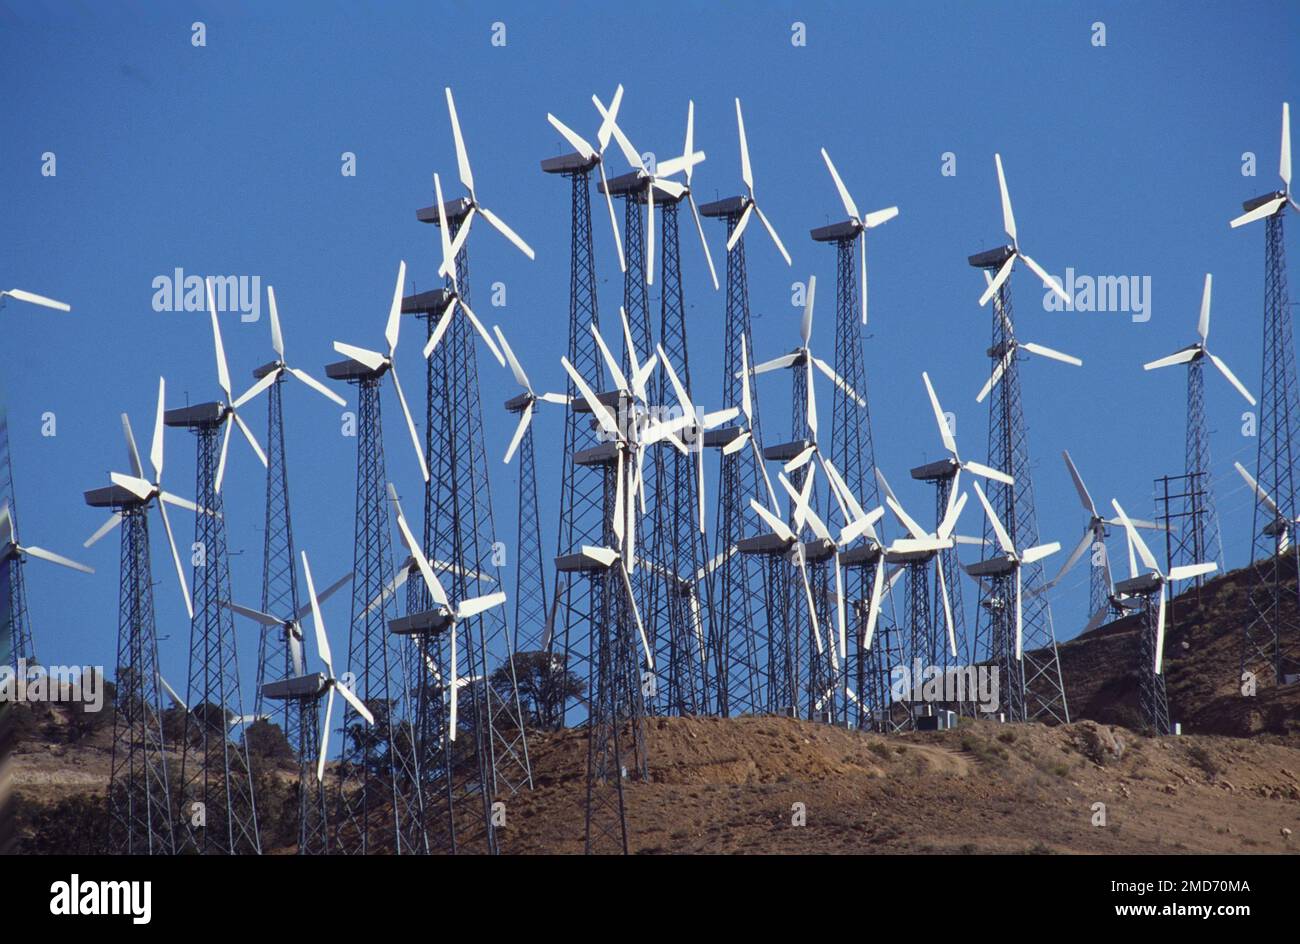 Sommet de montagne recouvert de moulins à vent pour produire de l'électricité Banque D'Images